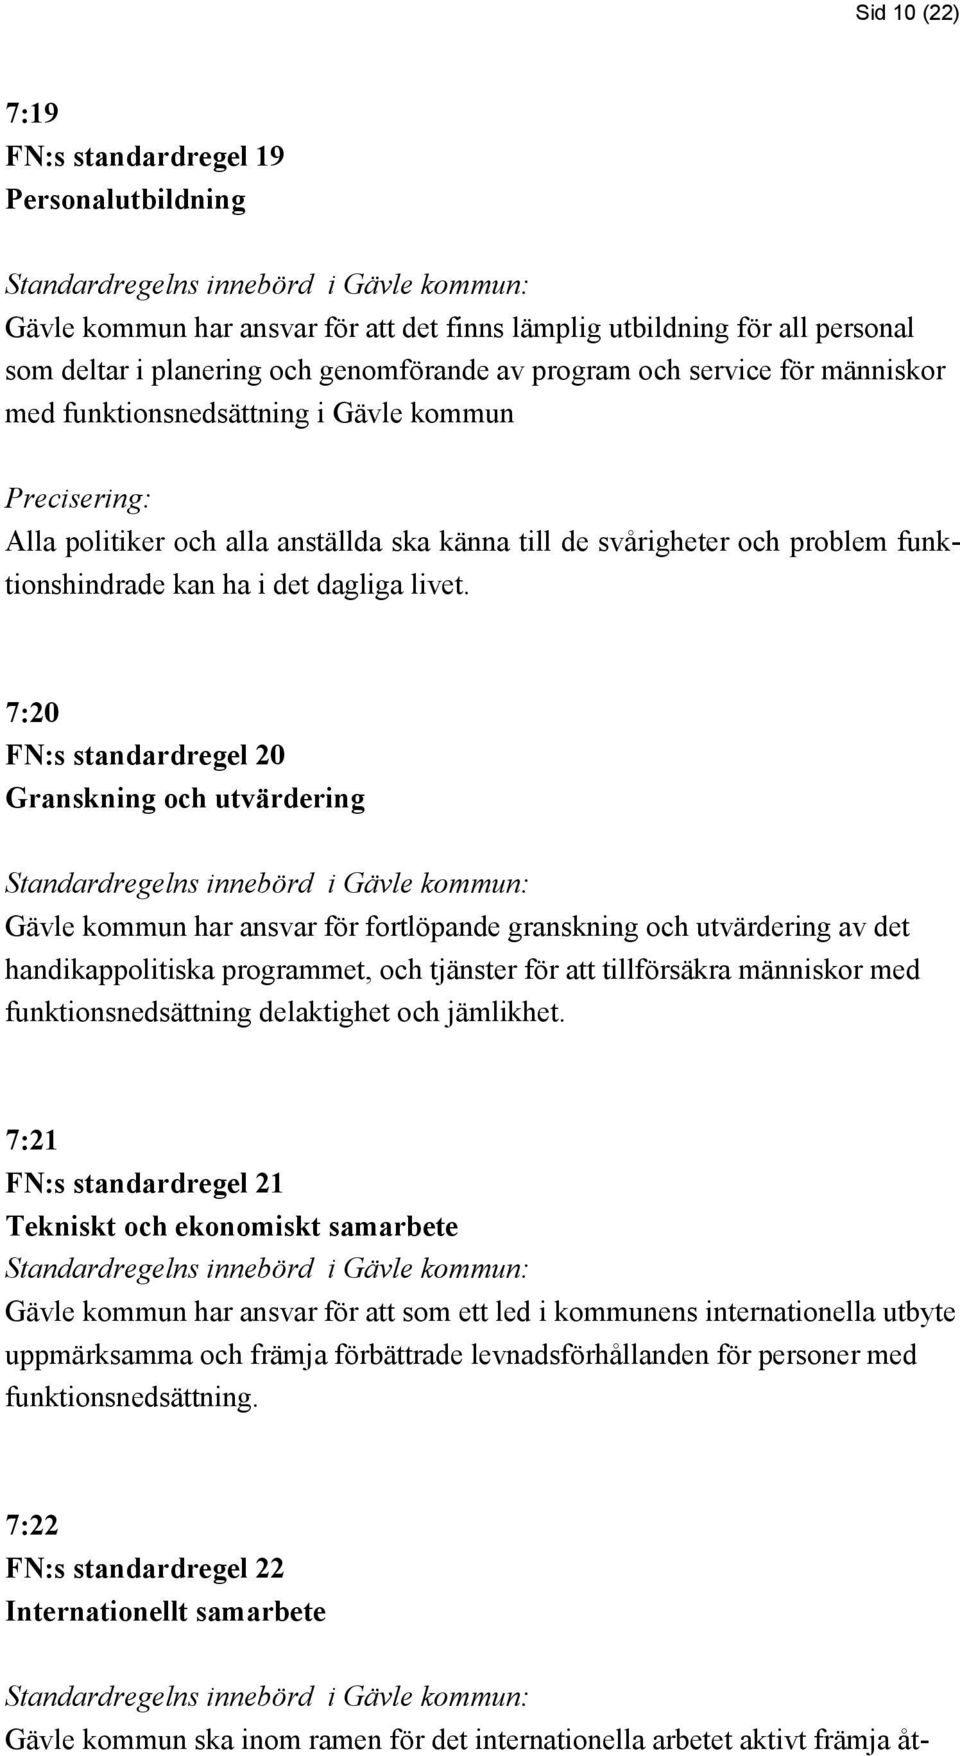 7:20 FN:s standardregel 20 Granskning och utvärdering Gävle kommun har ansvar för fortlöpande granskning och utvärdering av det handikappolitiska programmet, och tjänster för att tillförsäkra